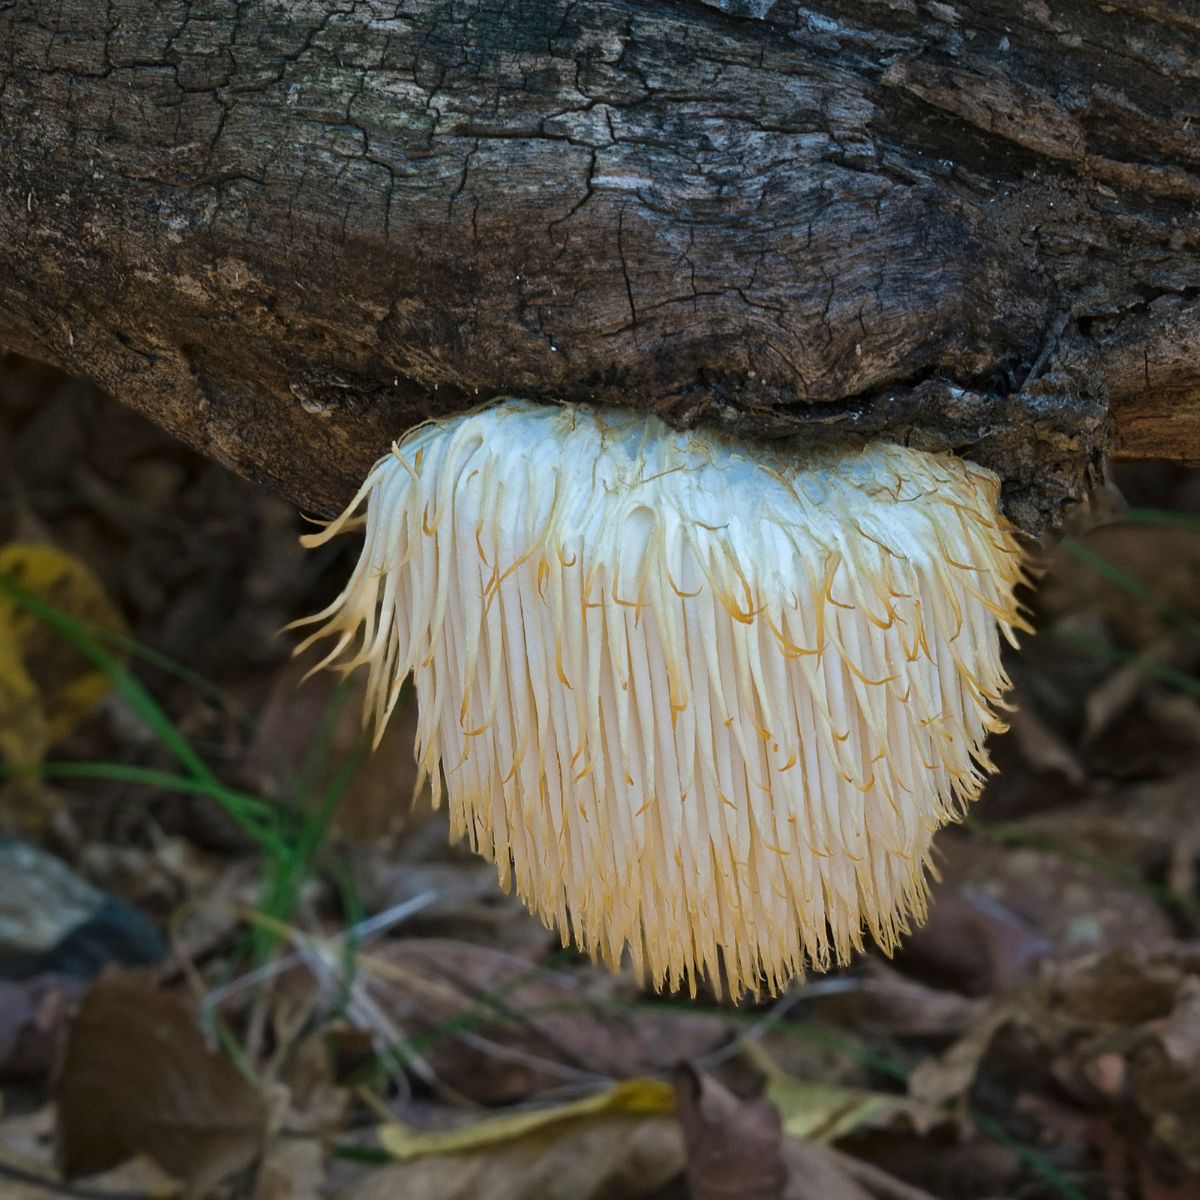 Lion's mane mushroom growing on a tree.